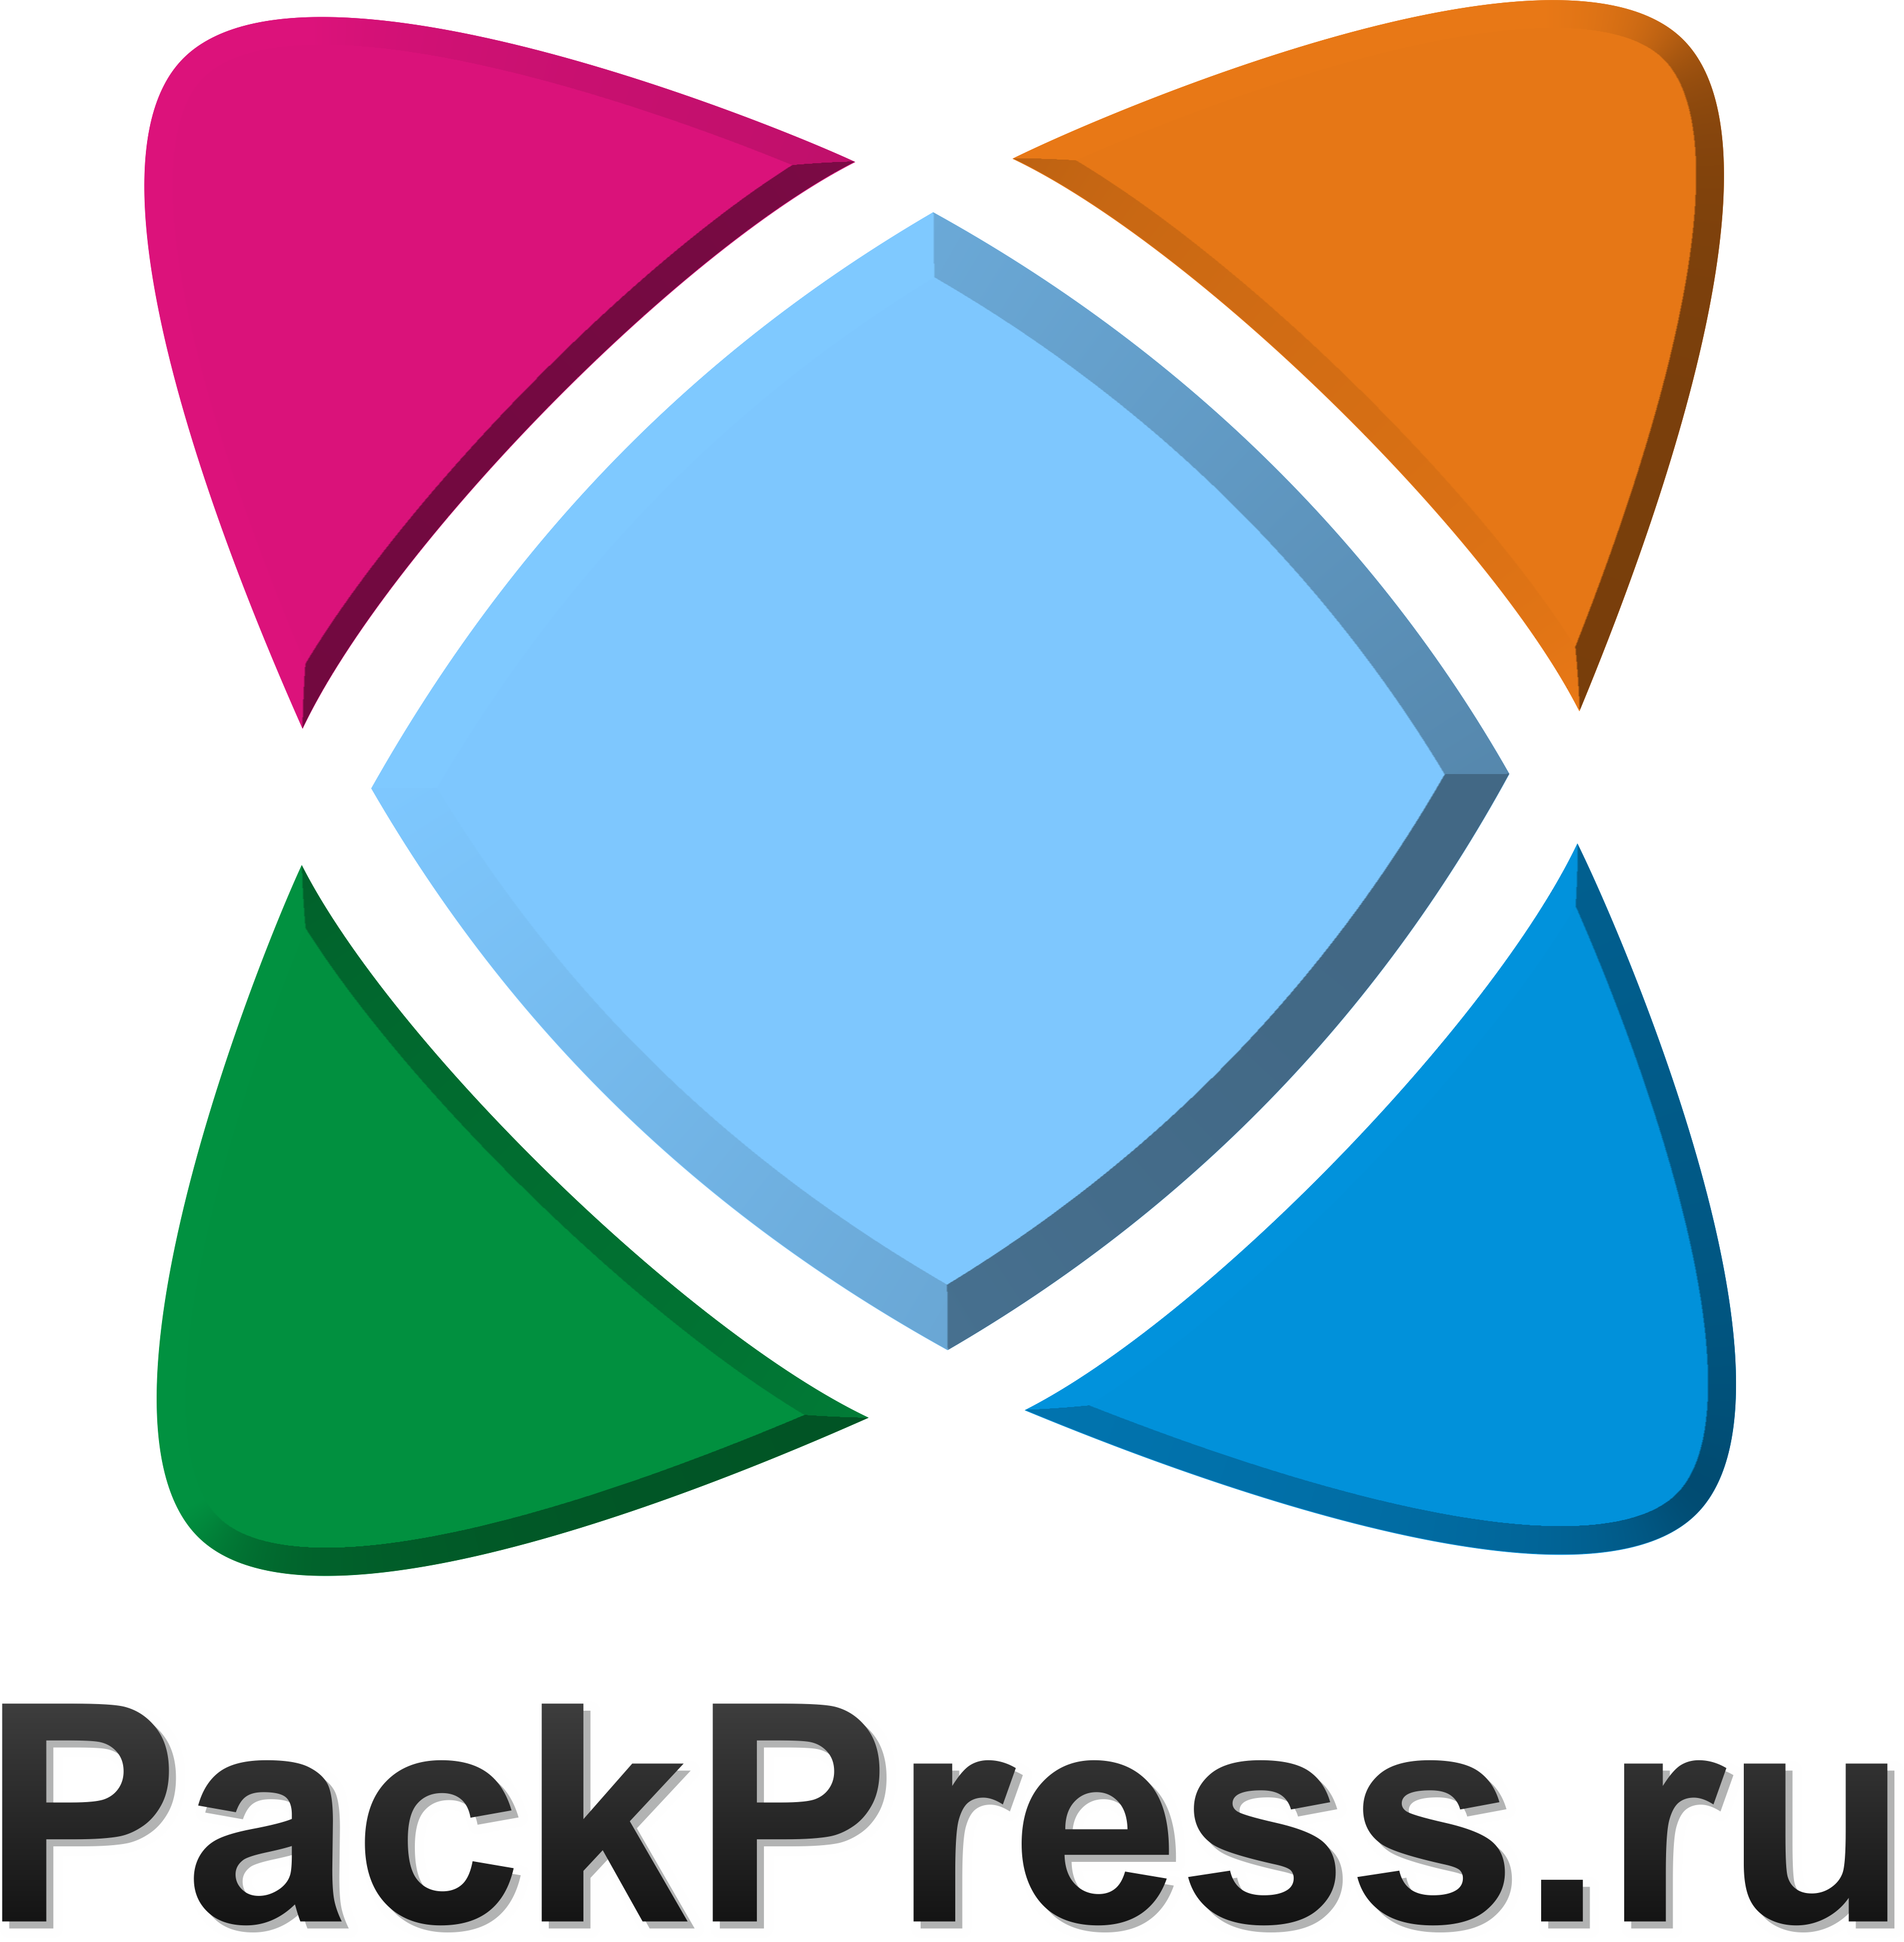 PackPress.ru